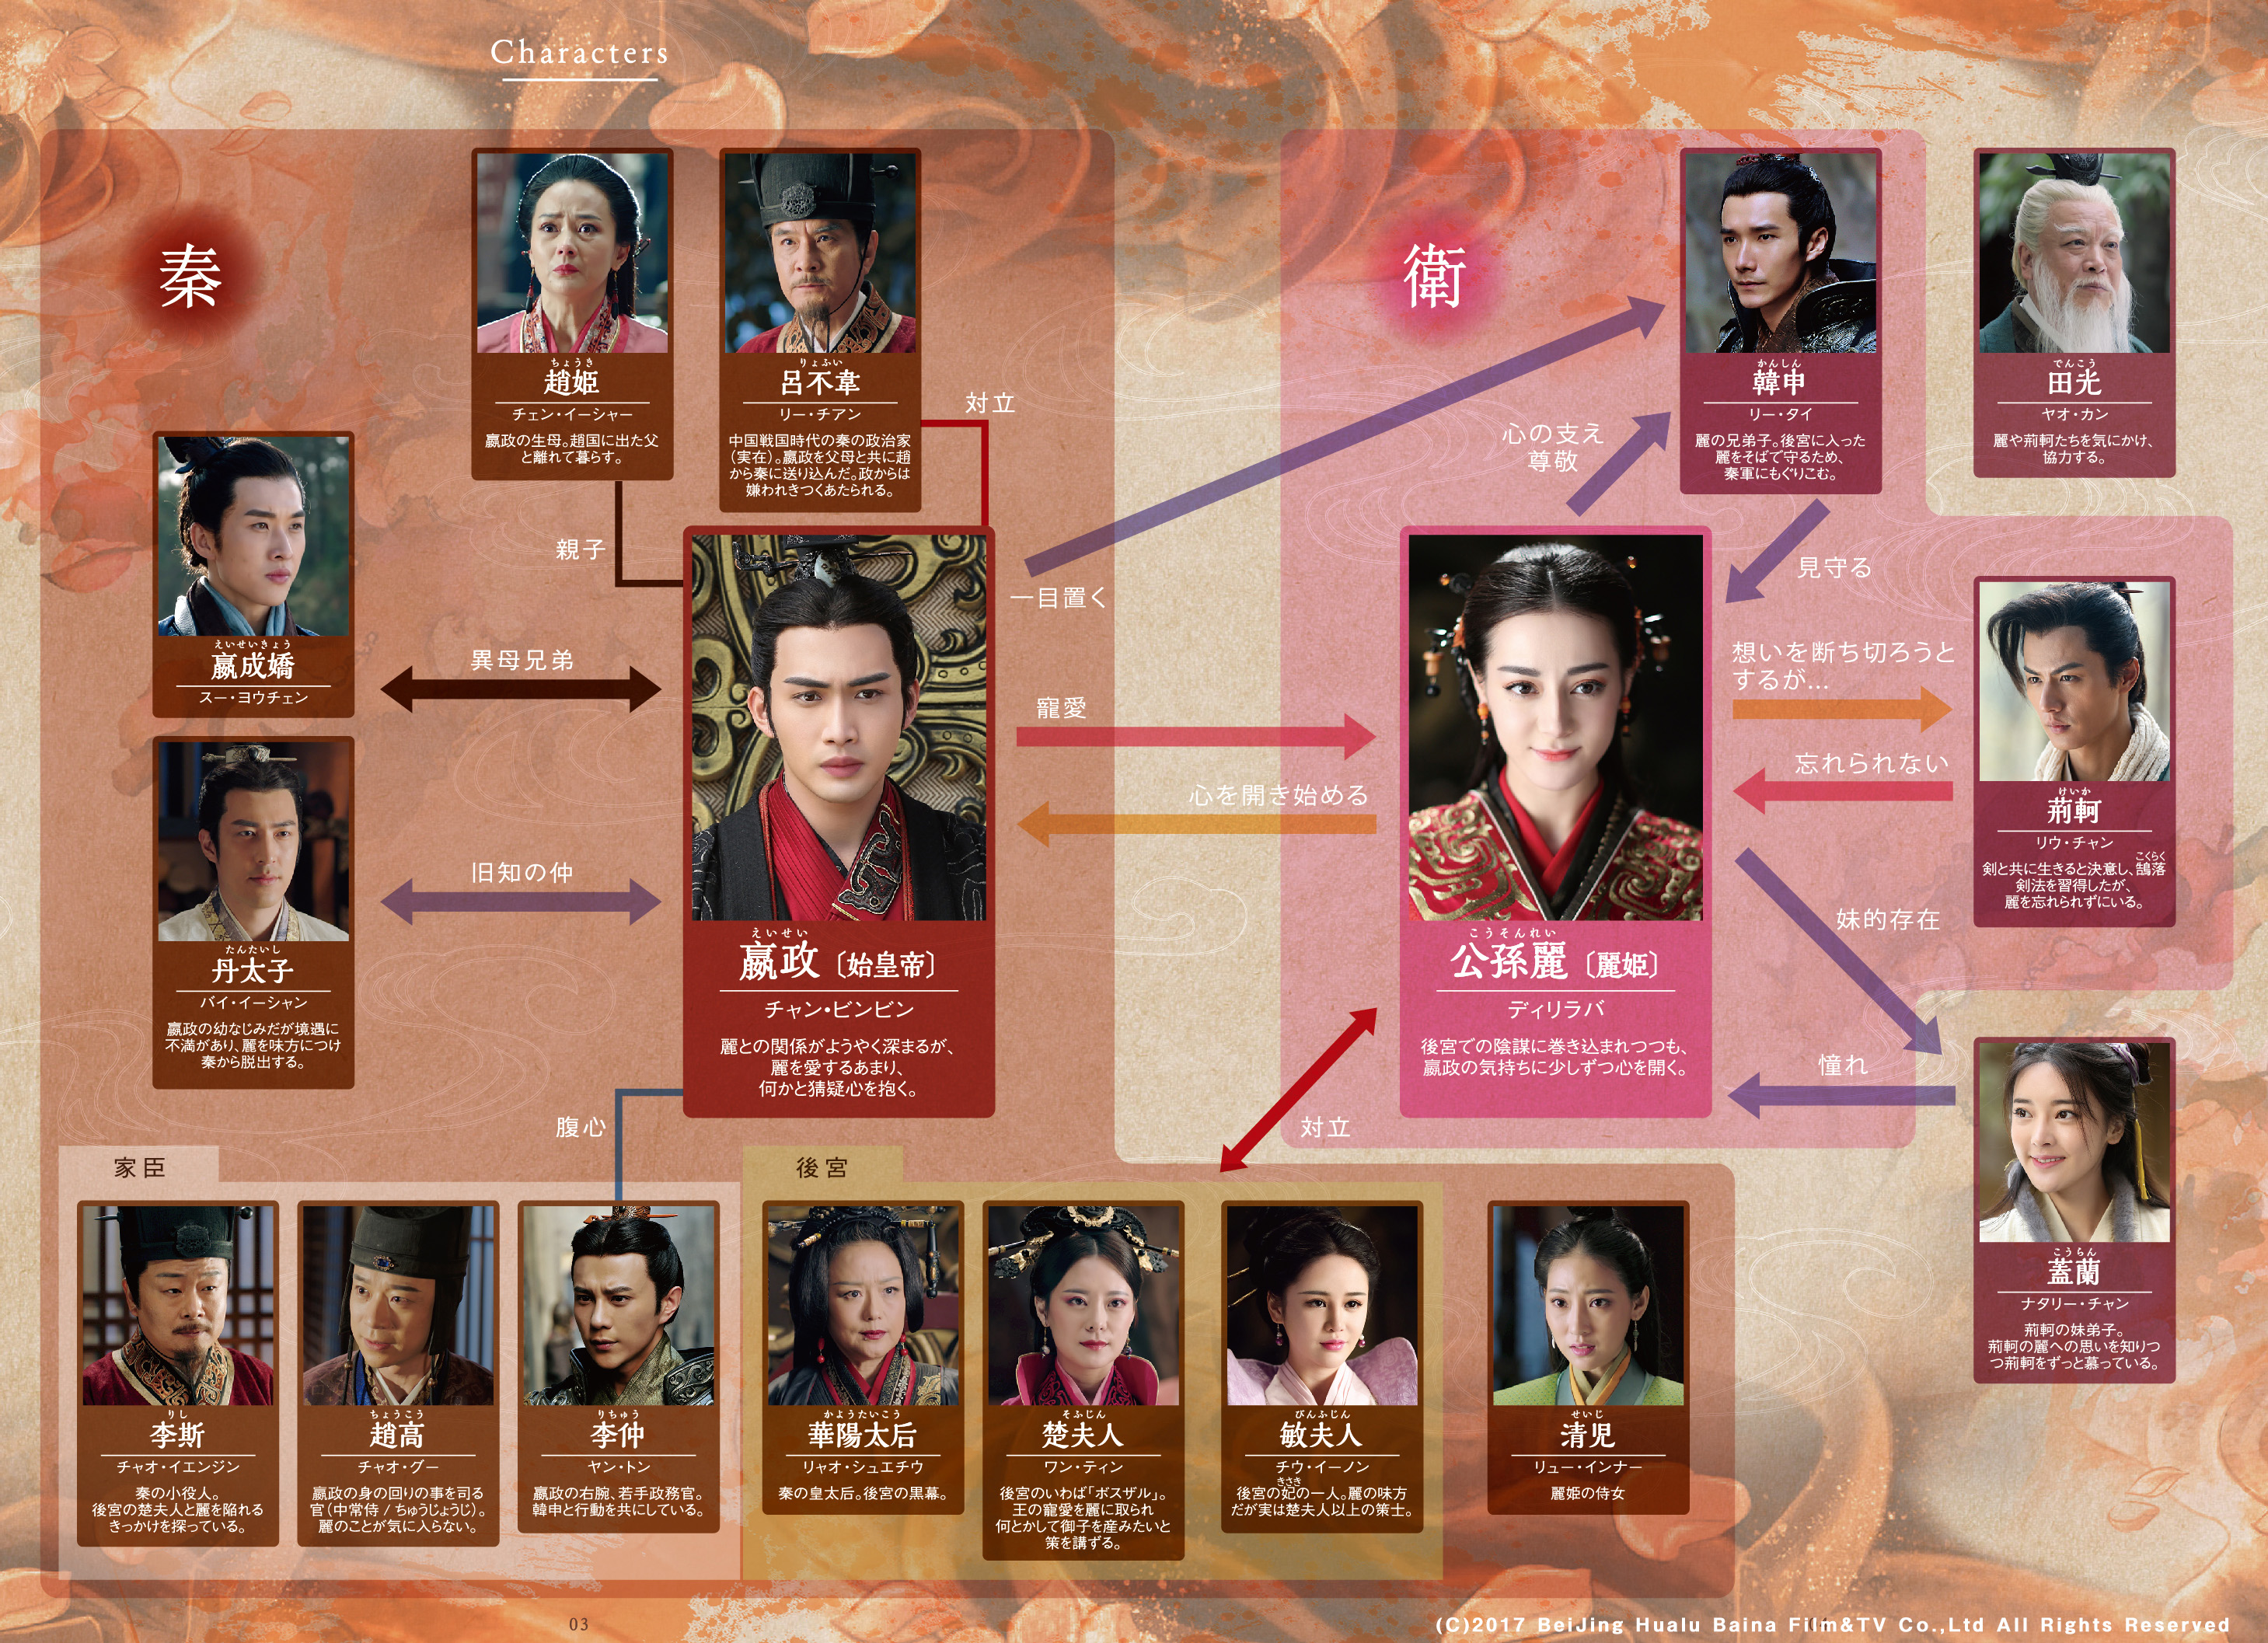 歴史 ドラマ テレビ 中国 中国時代劇ドラマと年表。中国時代劇を見て中国の歴史を学ぶ。